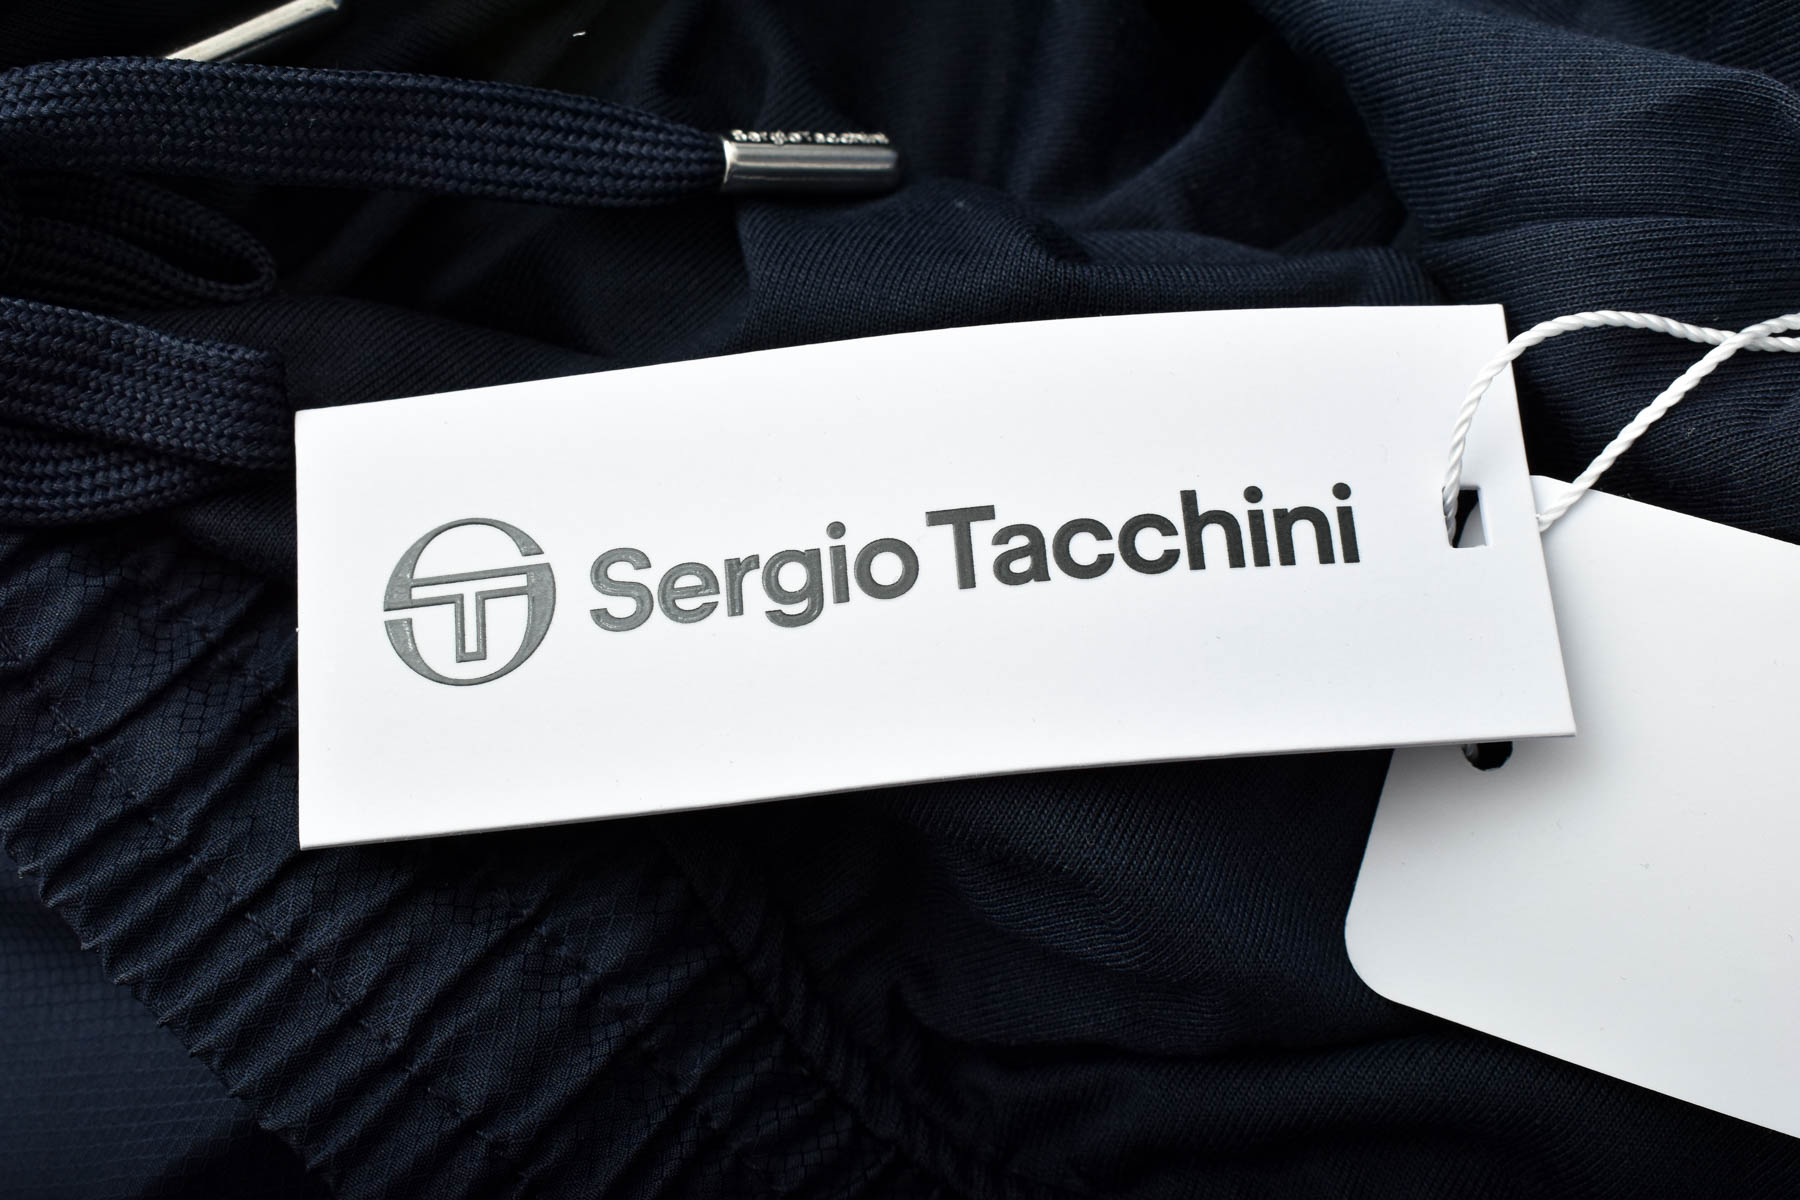 Male sports wear - Sergio Tacchini - 2